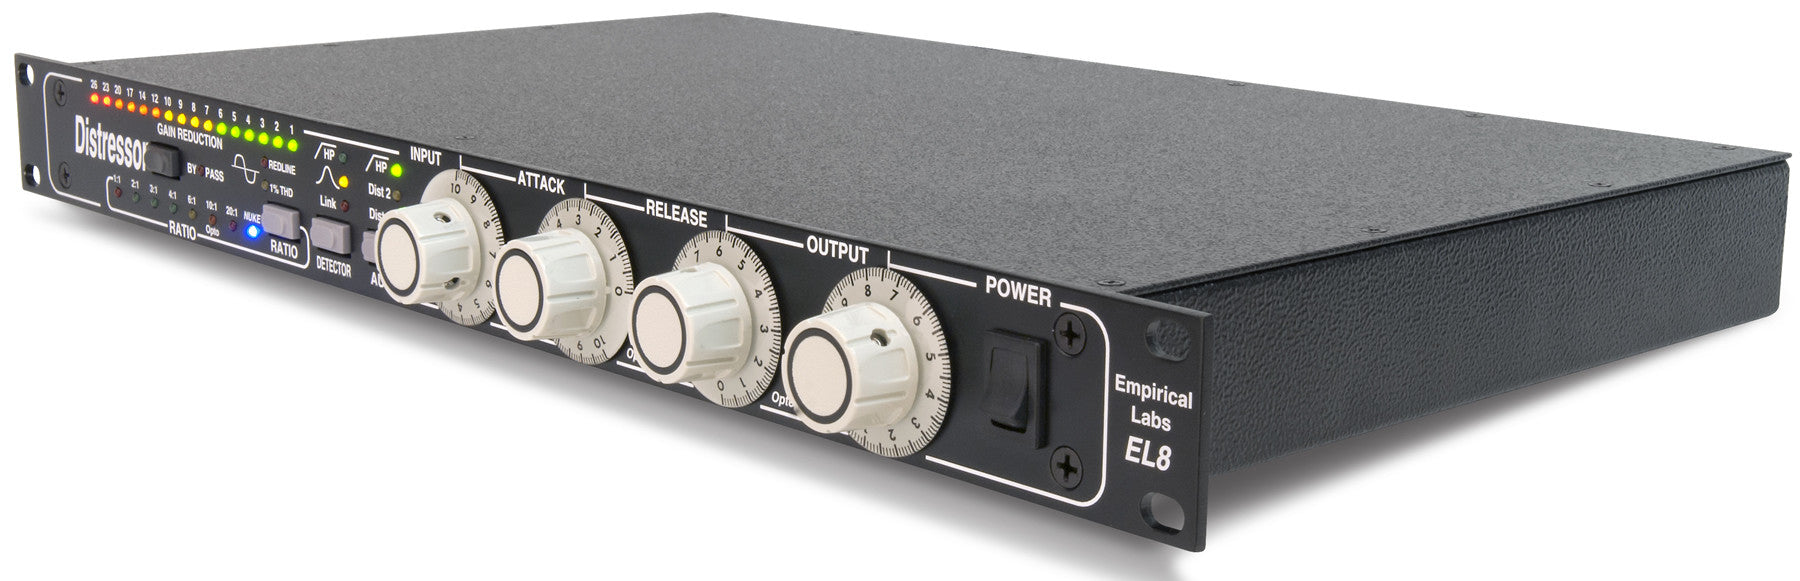 Recording Equipment - Empirical Labs Inc. - Empirical Labs EL-8 Distressor - Professional Audio Design, Inc